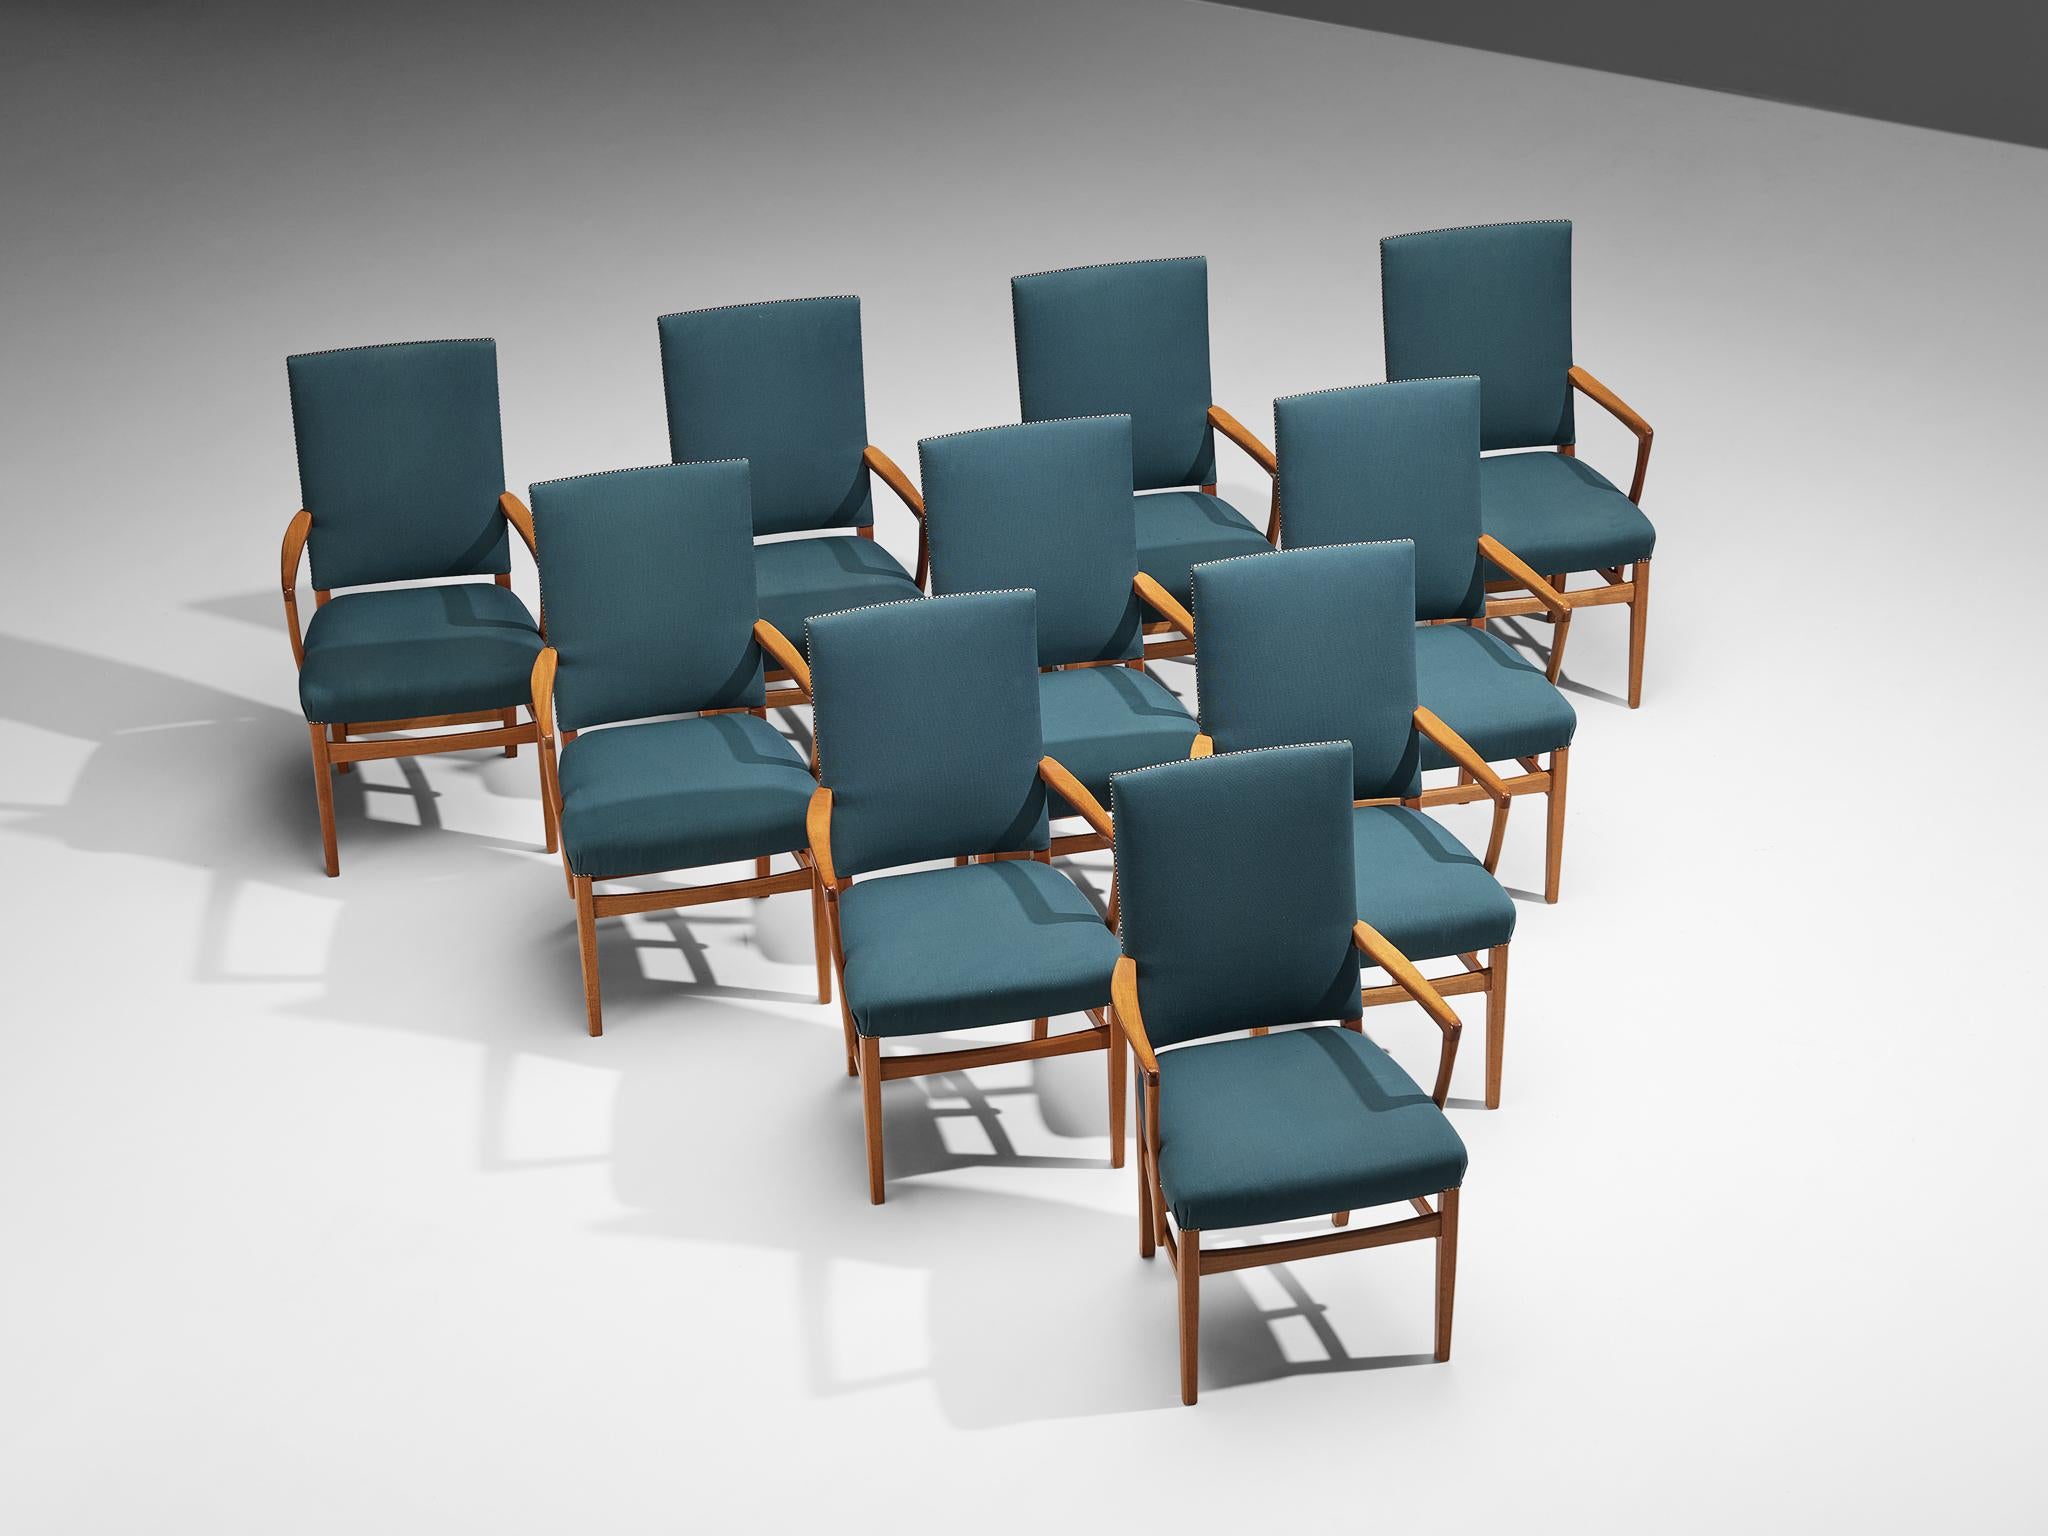 Carl Malmsten, Satz von zehn Esszimmerstühlen, Teak, Stoff, Messing, Schweden, um 1970

Diese Sessel mit hoher Rückenlehne wurden von dem schwedischen Designer Carl Malmsten (1888-1972) entworfen. Diese eleganten Sessel sind ein Paradebeispiel für